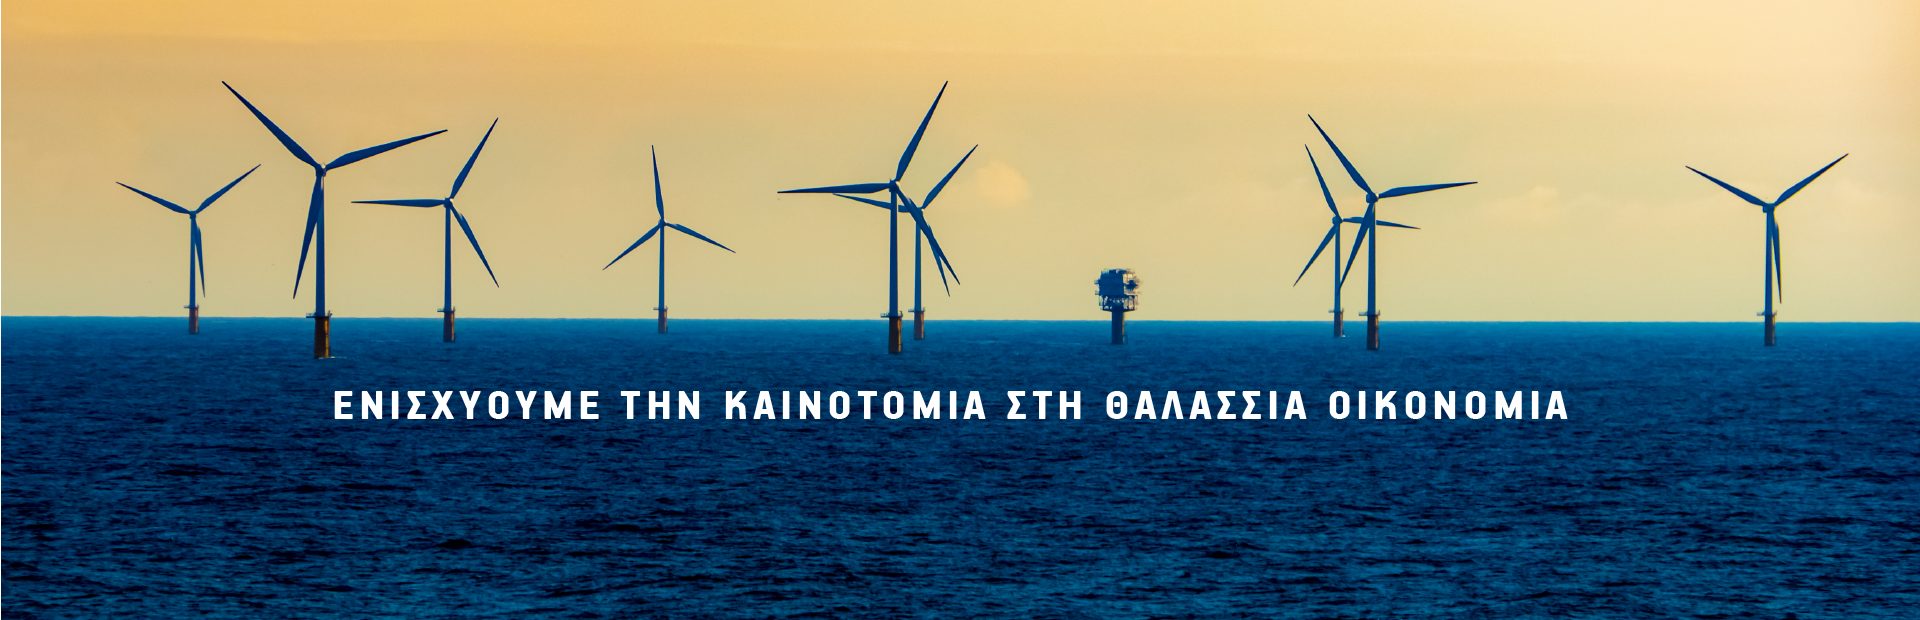 Μαΐστρος για την ελληνική θαλάσσια οικονομία και επιχειρηματικότητα μέσα από το πρόγραμμα INTERREG